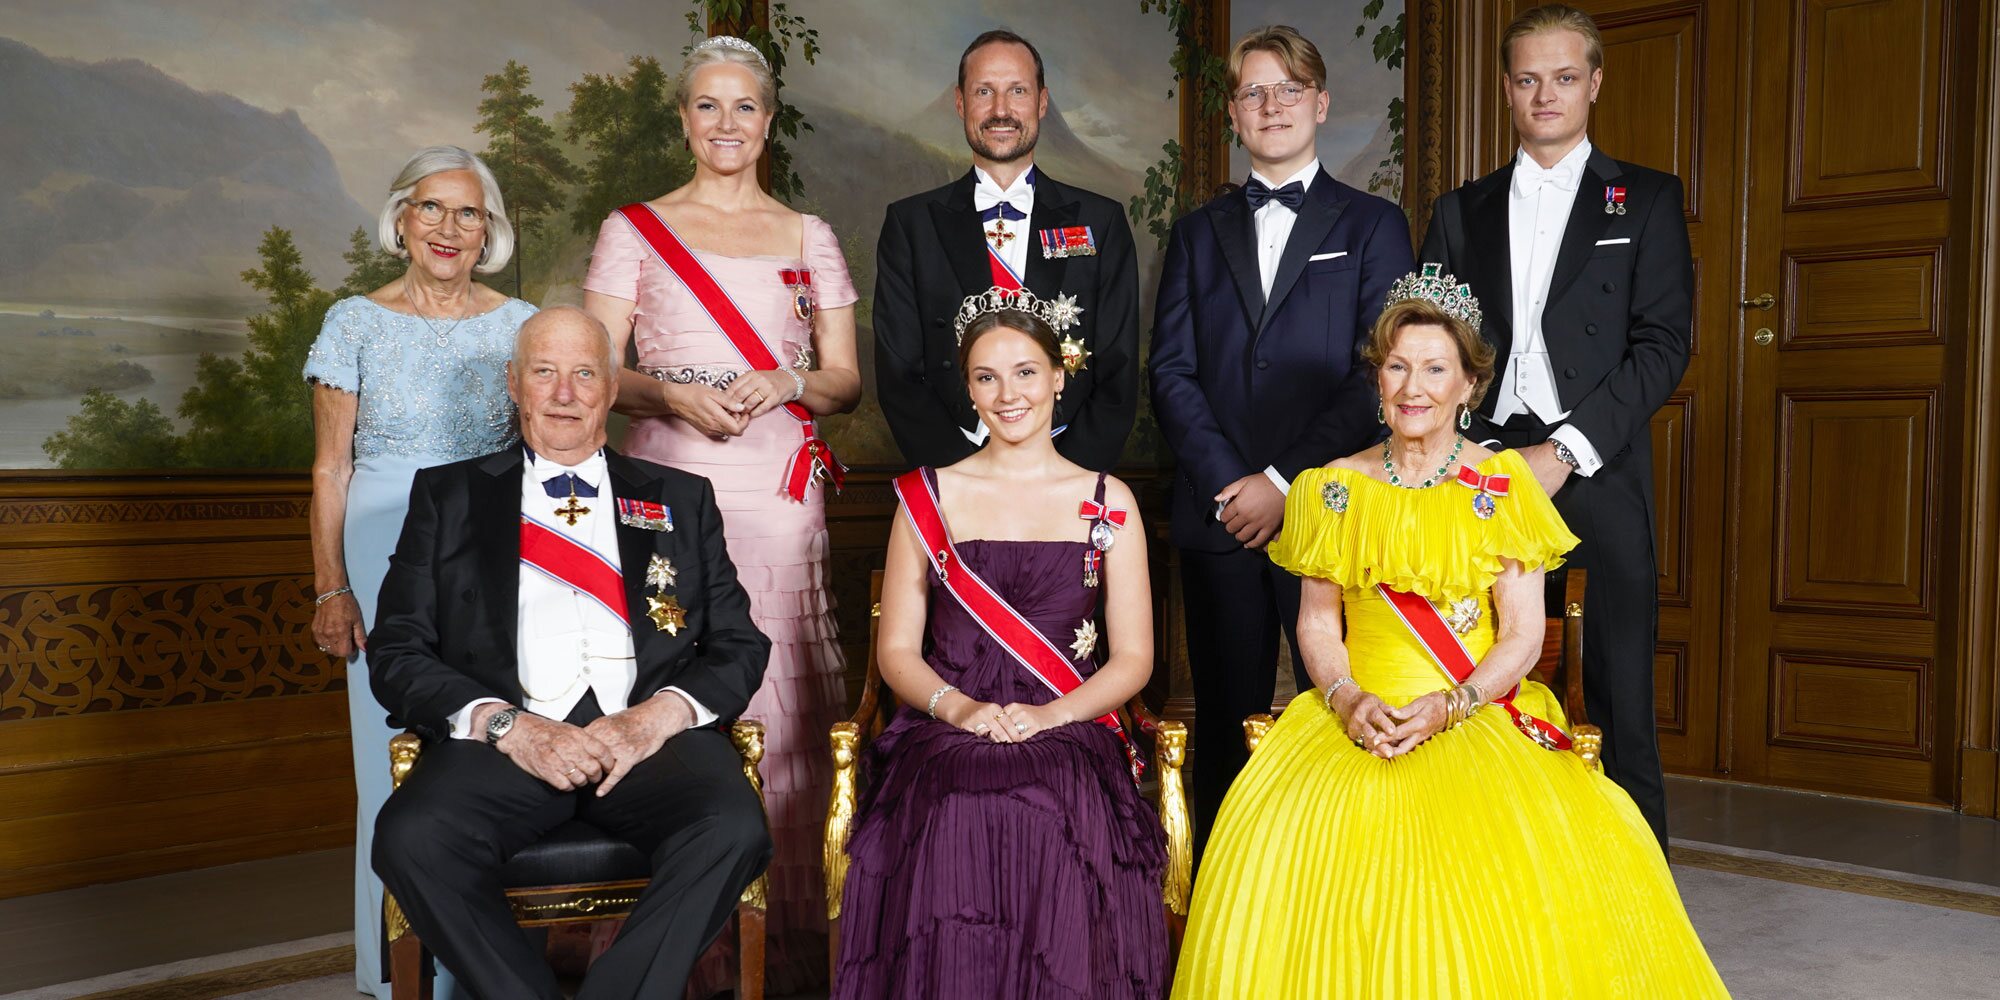 Las fotos oficiales de la cena de gala de Ingrid Alexandra de Noruega: familia, los royals invitados y los jóvenes herederos